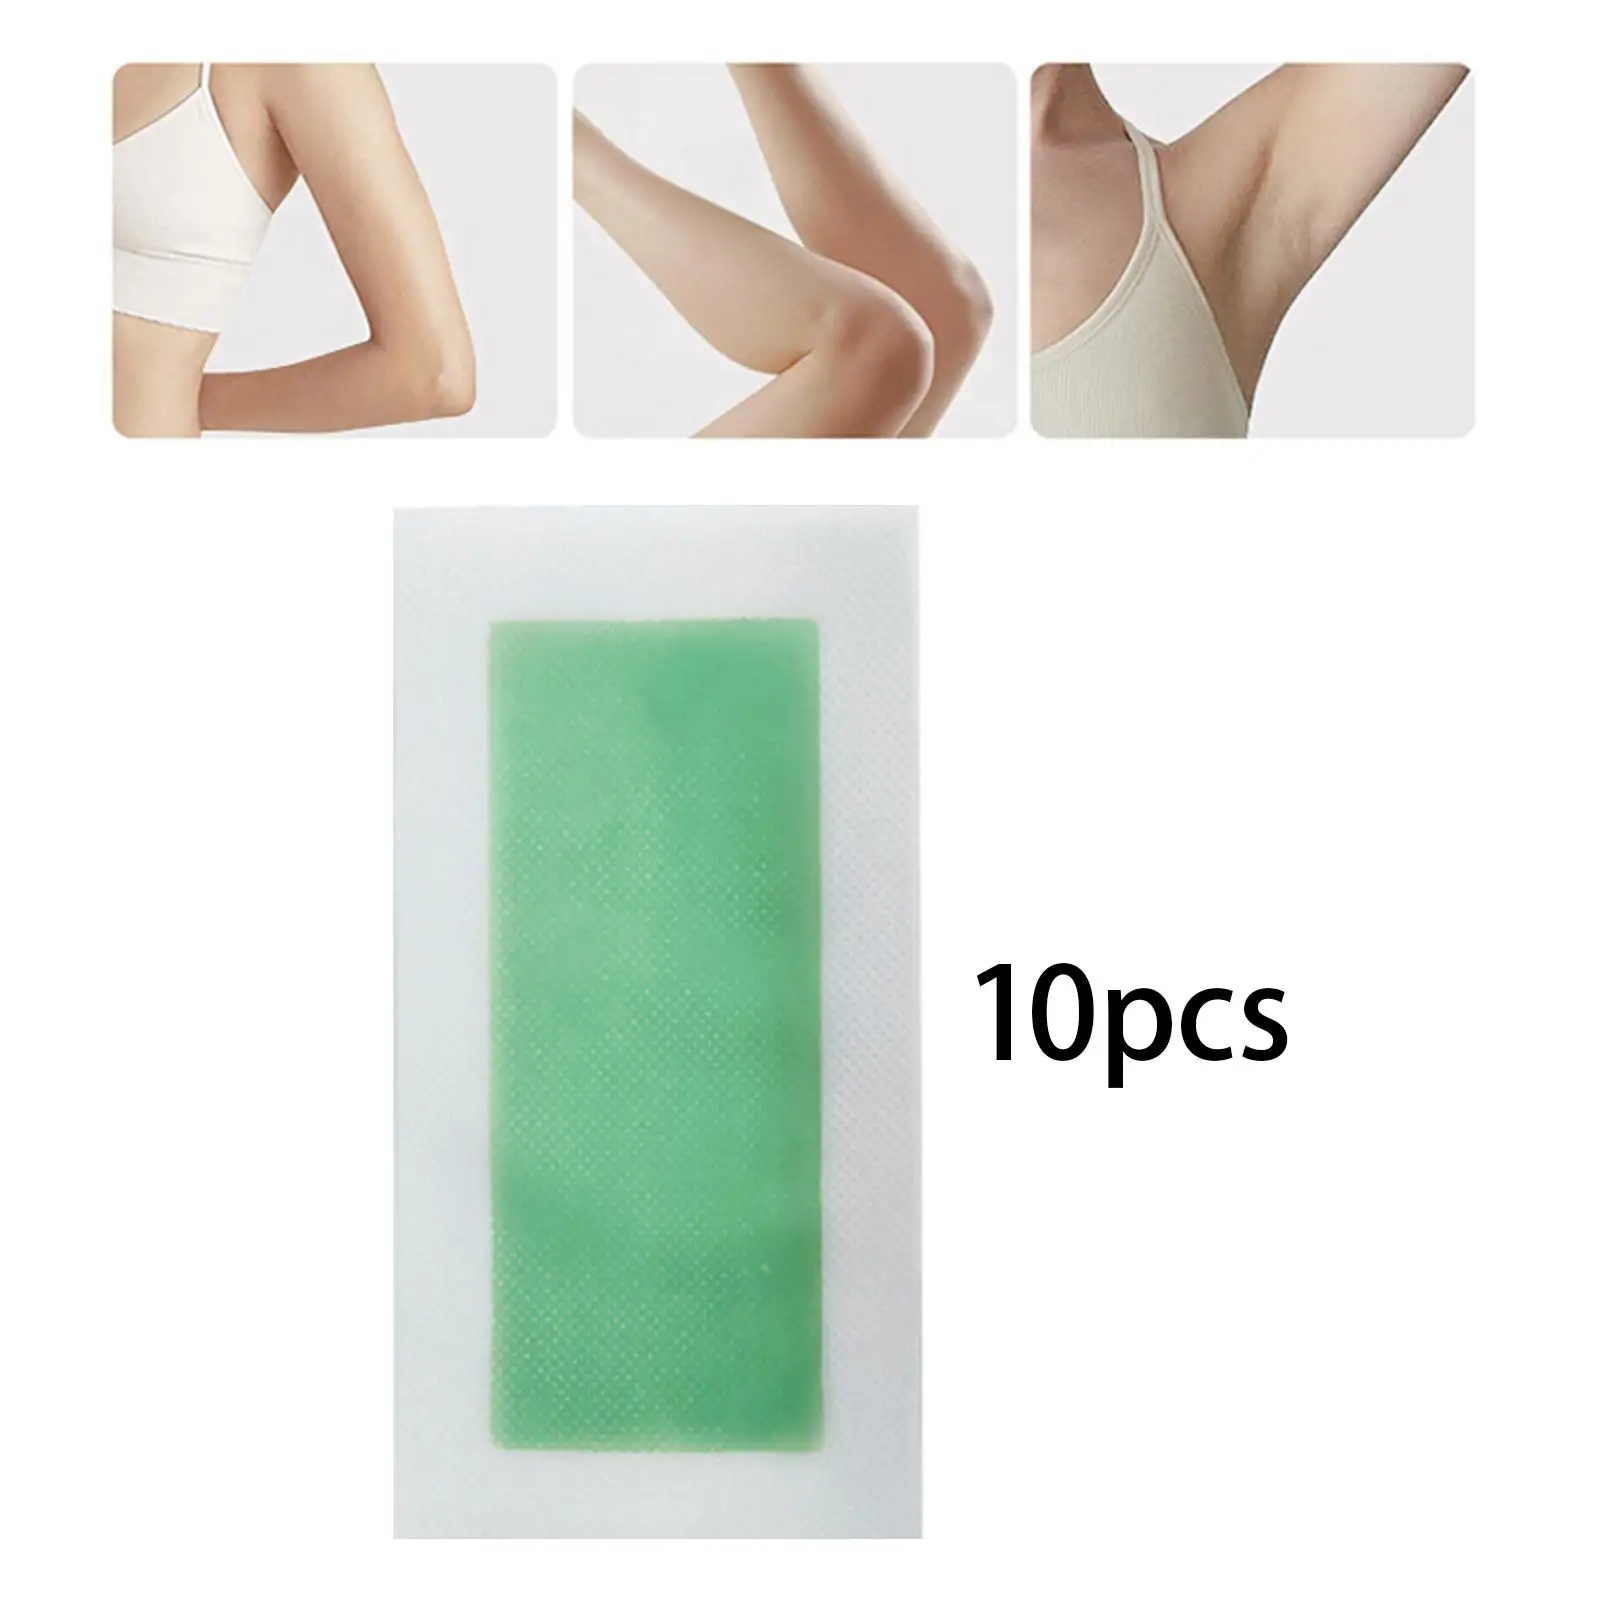 

Восковые полоски для лица гипоаллергенные для всех типов кожи, одноразовые нежные дезинфицирующие полоски для подмышек, рук, ног, женщин, 20 шт.